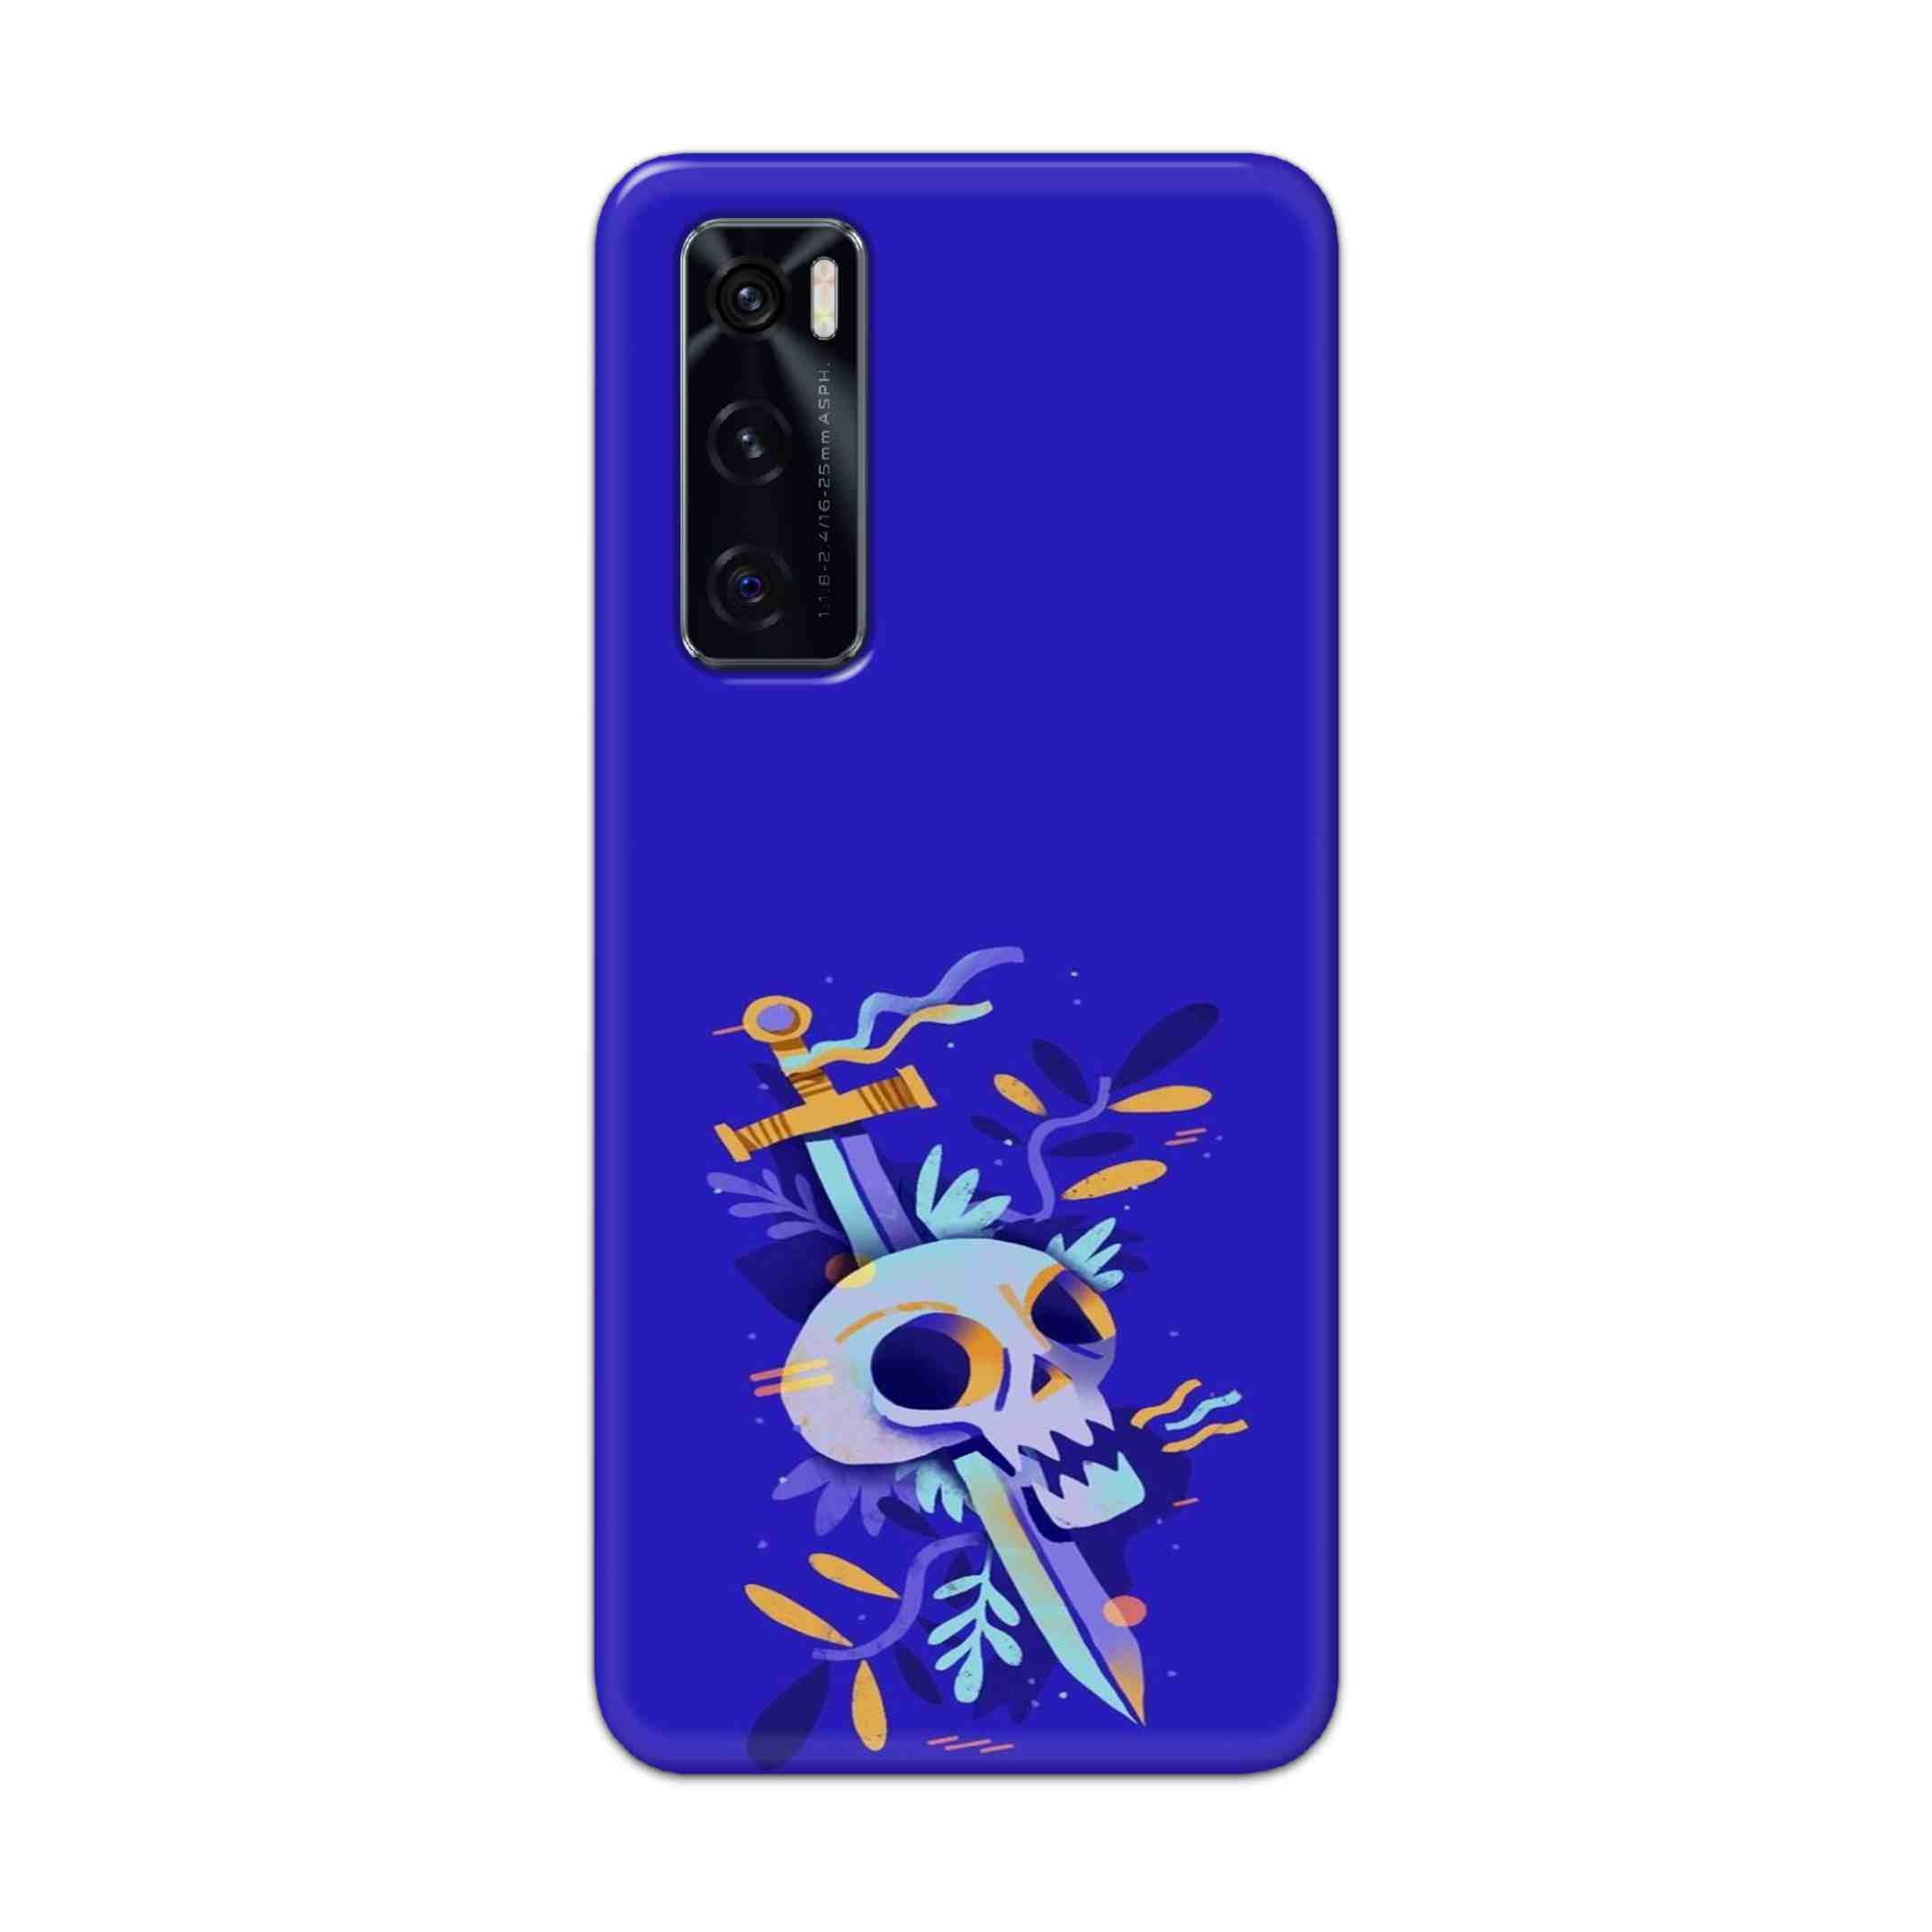 Buy Blue Skull Hard Back Mobile Phone Case Cover For Vivo V20 SE Online